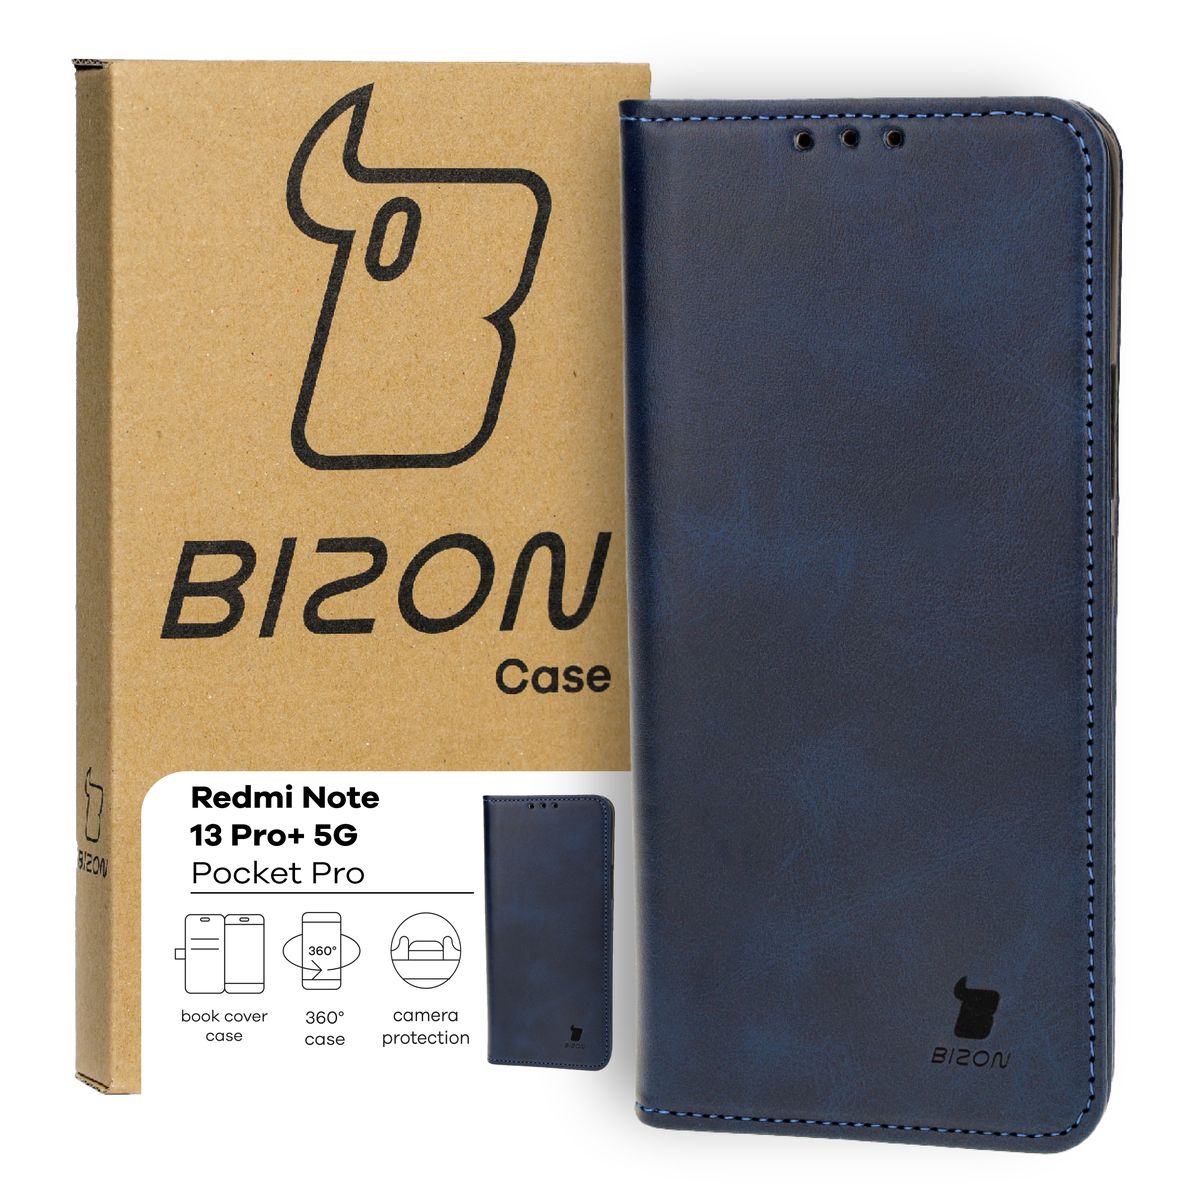 Schutzhülle für Xiaomi Redmi Note 13 Pro+ 5G, Bizon Case Pocket Pro, Dunkelblau